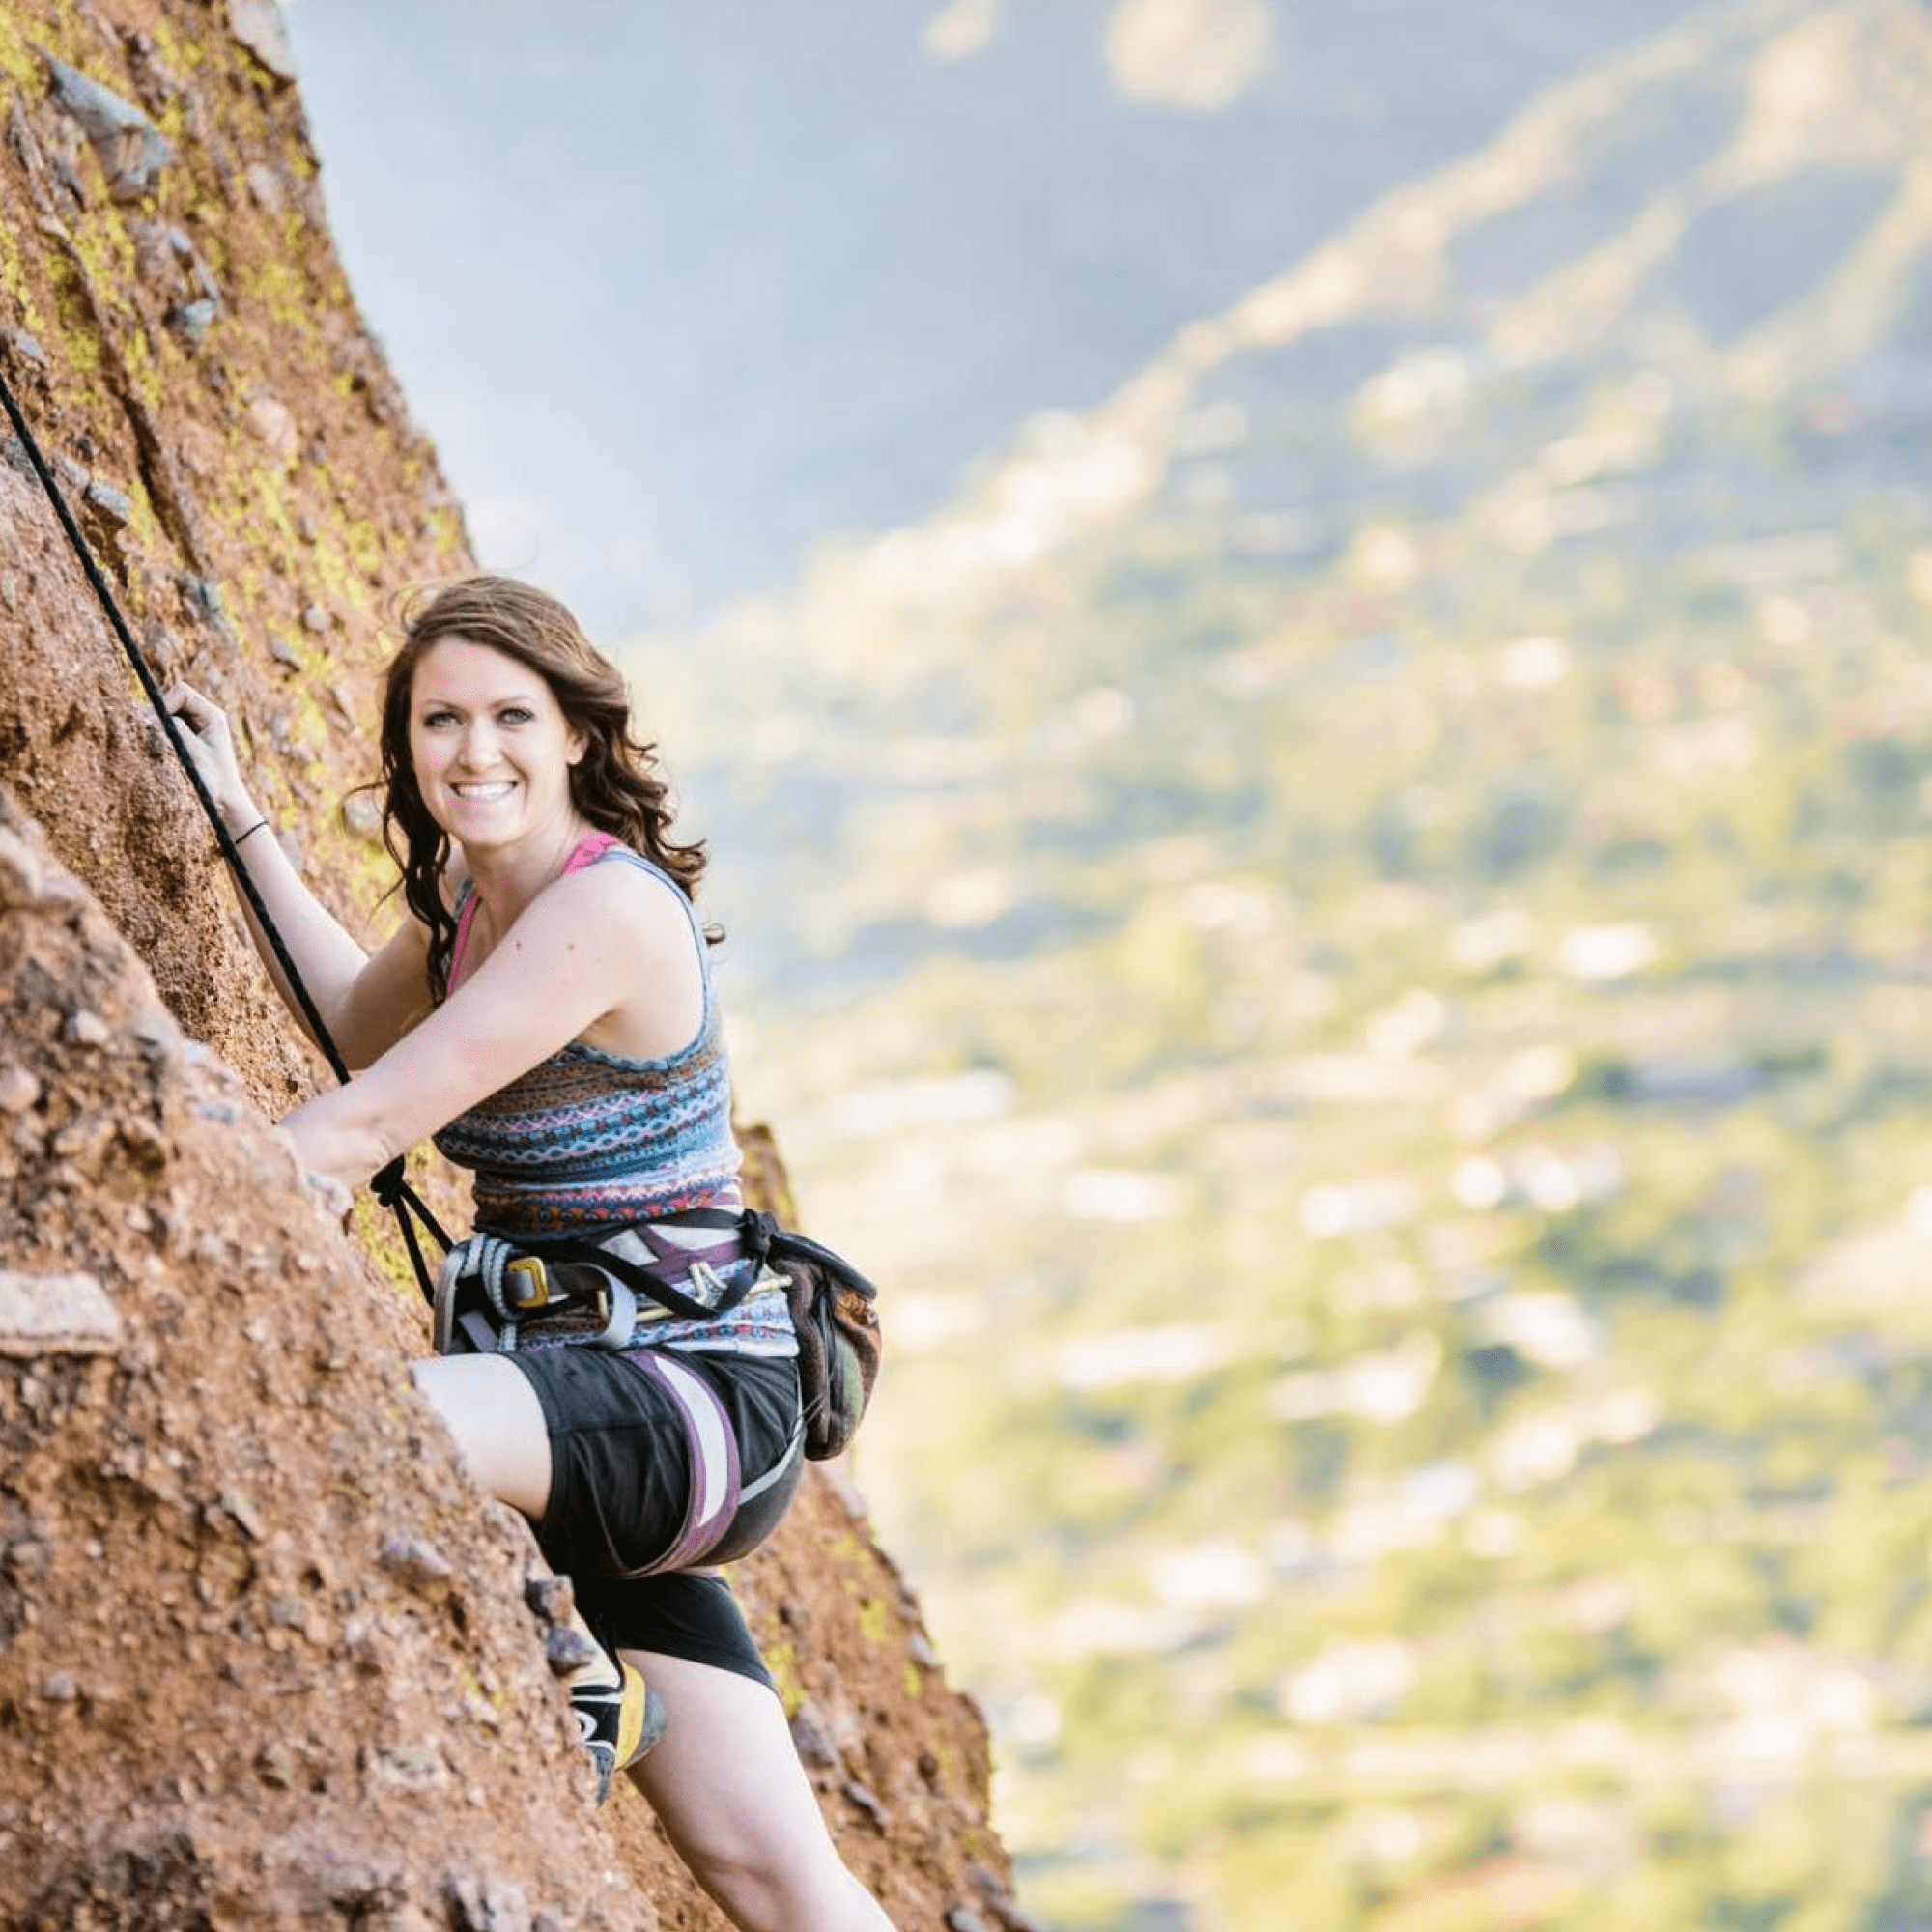 A Woman on a mountain climbing